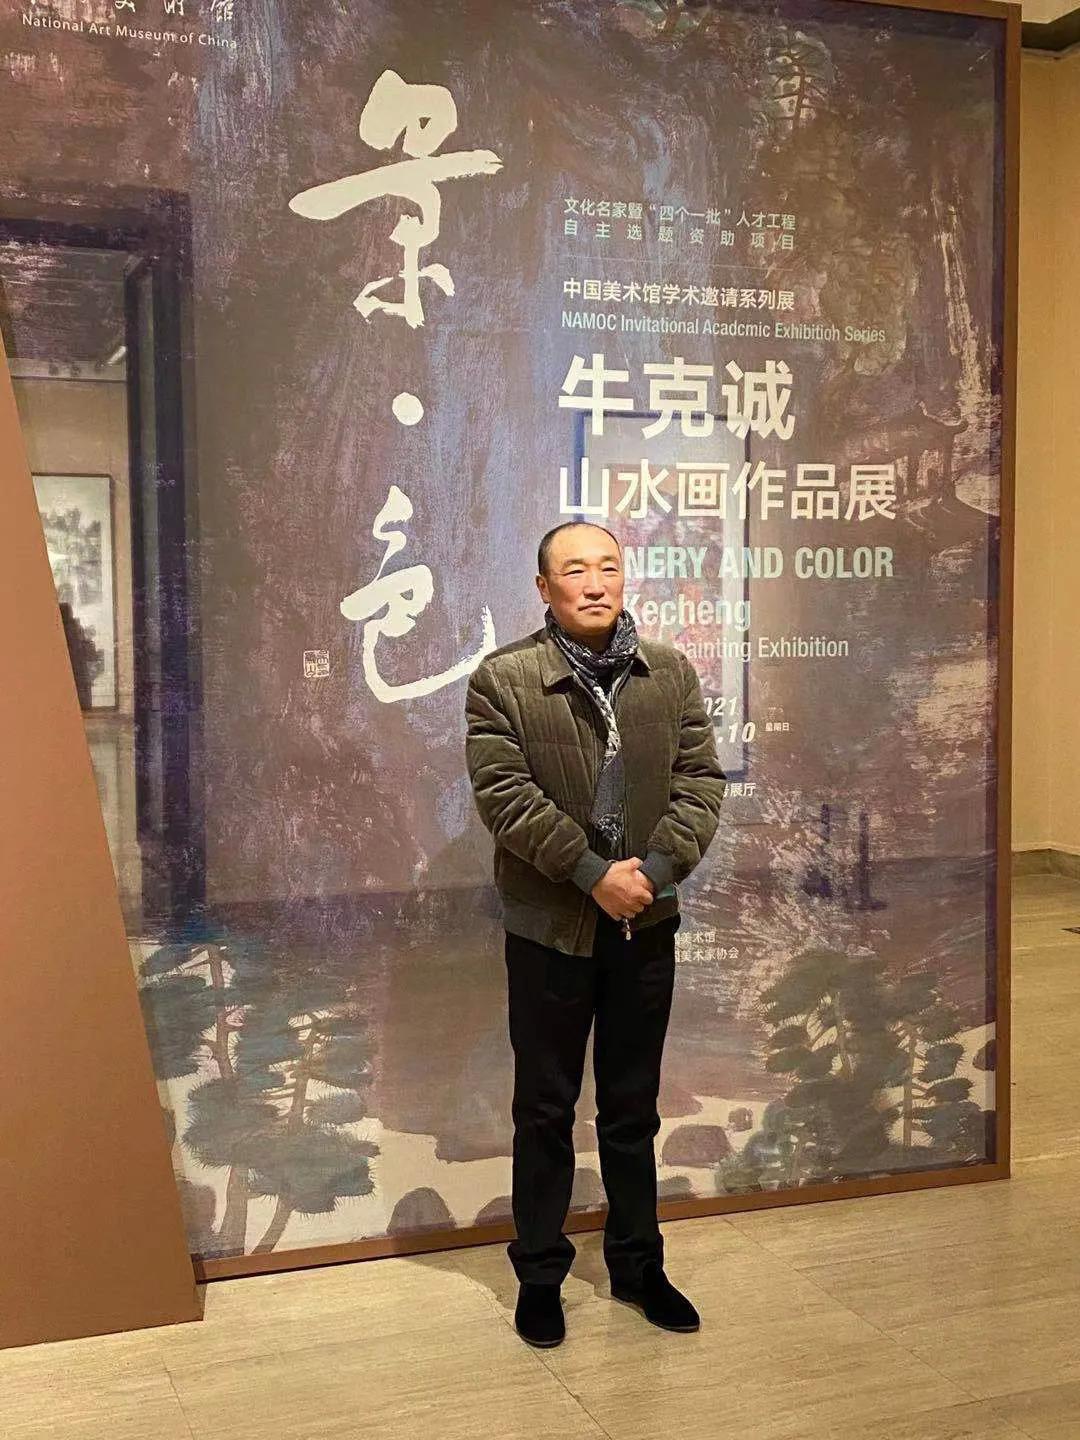 协会艺术总主持吴为山学术主持尚辉展览时间2020年12月27日—2021年1